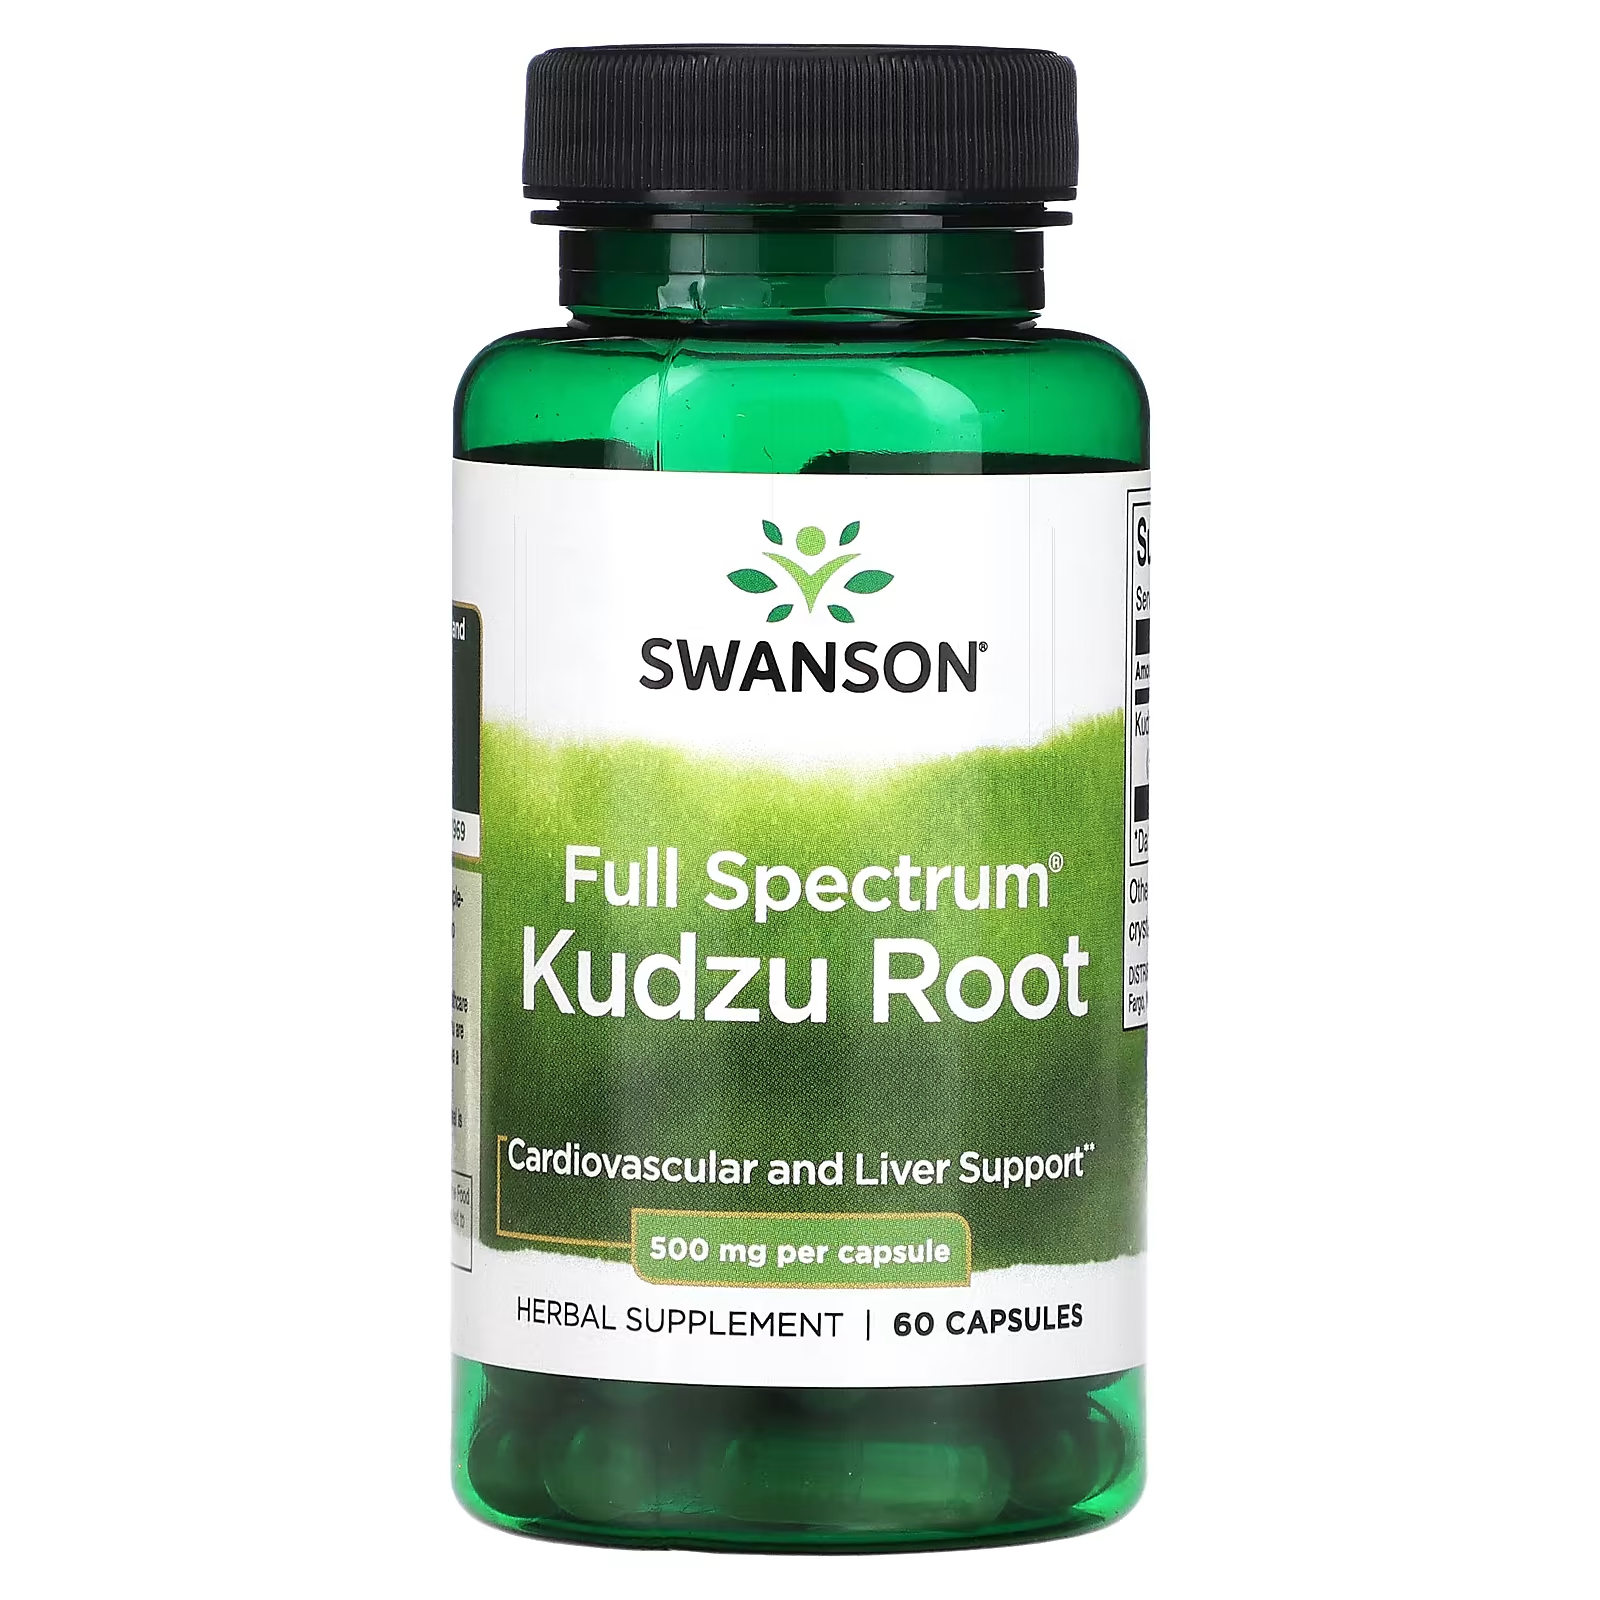 Растительная добавка Swanson Full Spectrum Kudzu Root, 60 капсул naturesplus heartbeat поддержка сердечно сосудистой системы 90 таблеток в форме сердца